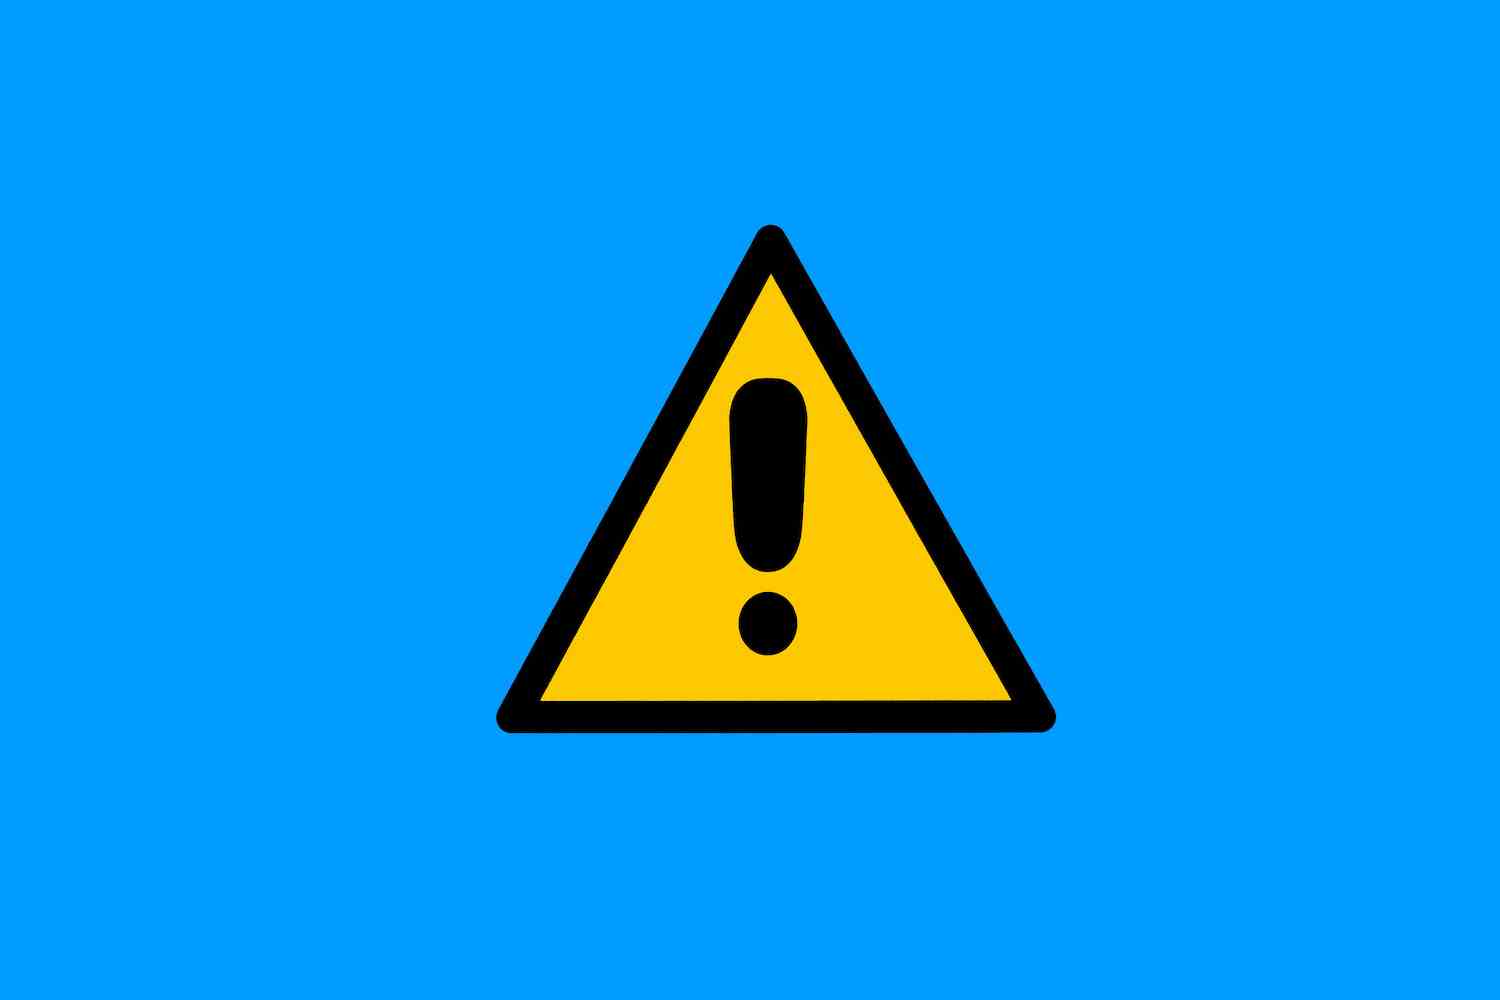 Warnschild mit gelbem und schwarzem Dreieck mit Ausrufezeichen auf blauem Hintergrund.  Gefahr, Risiko, Vorsicht, Aufmerksamkeit, Verkehrszeichen und Pflegekonzept.